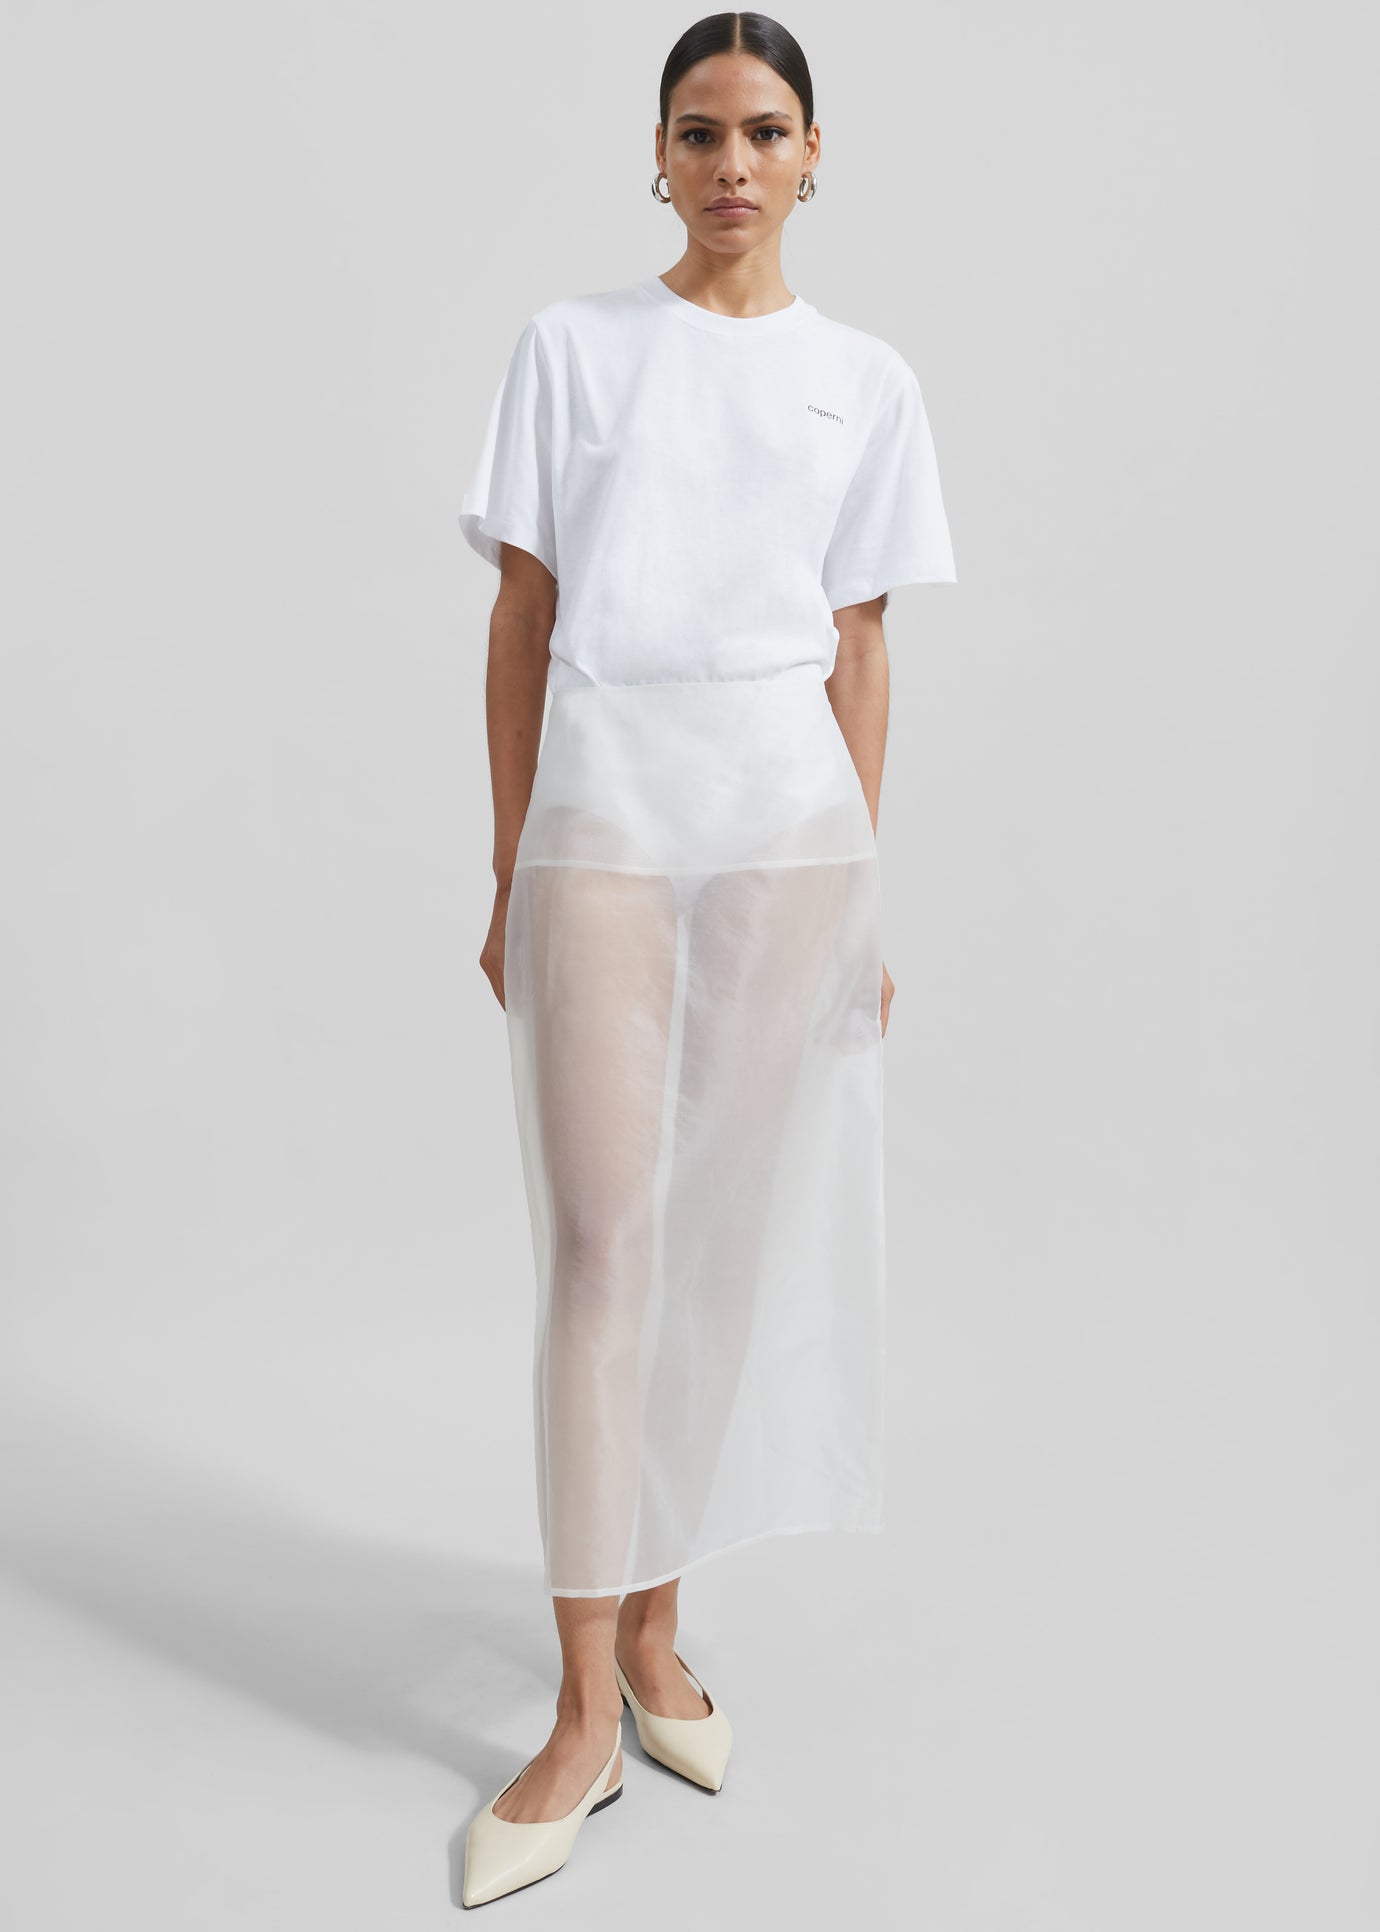 Coperni T-Shirt Bodysuit - White - 1